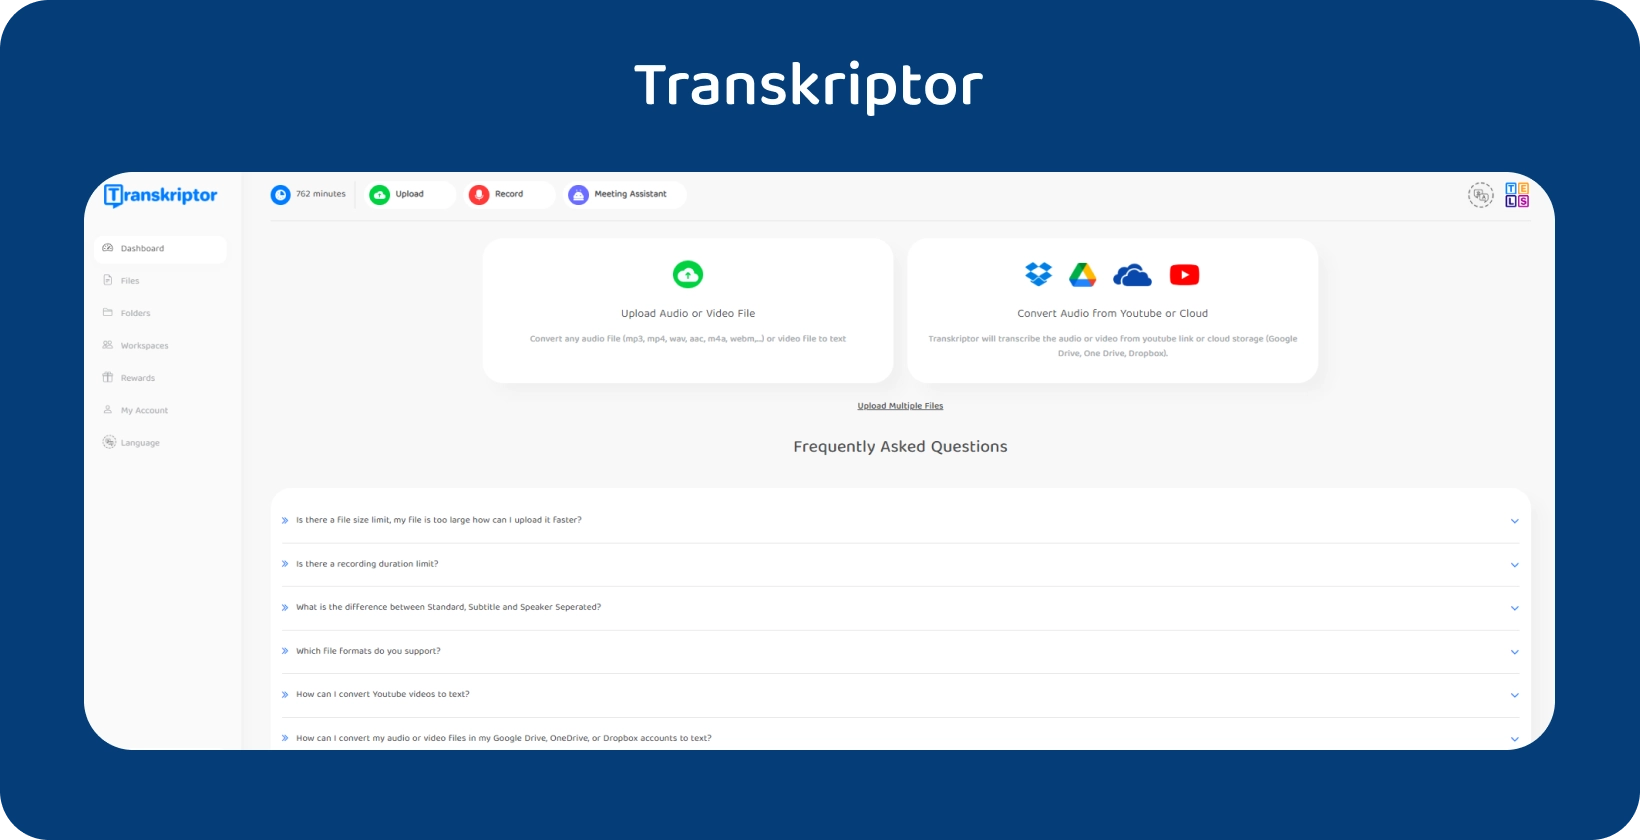 Интерфейс Transkriptor, рекламирующий сервис преобразования аудио в текст.